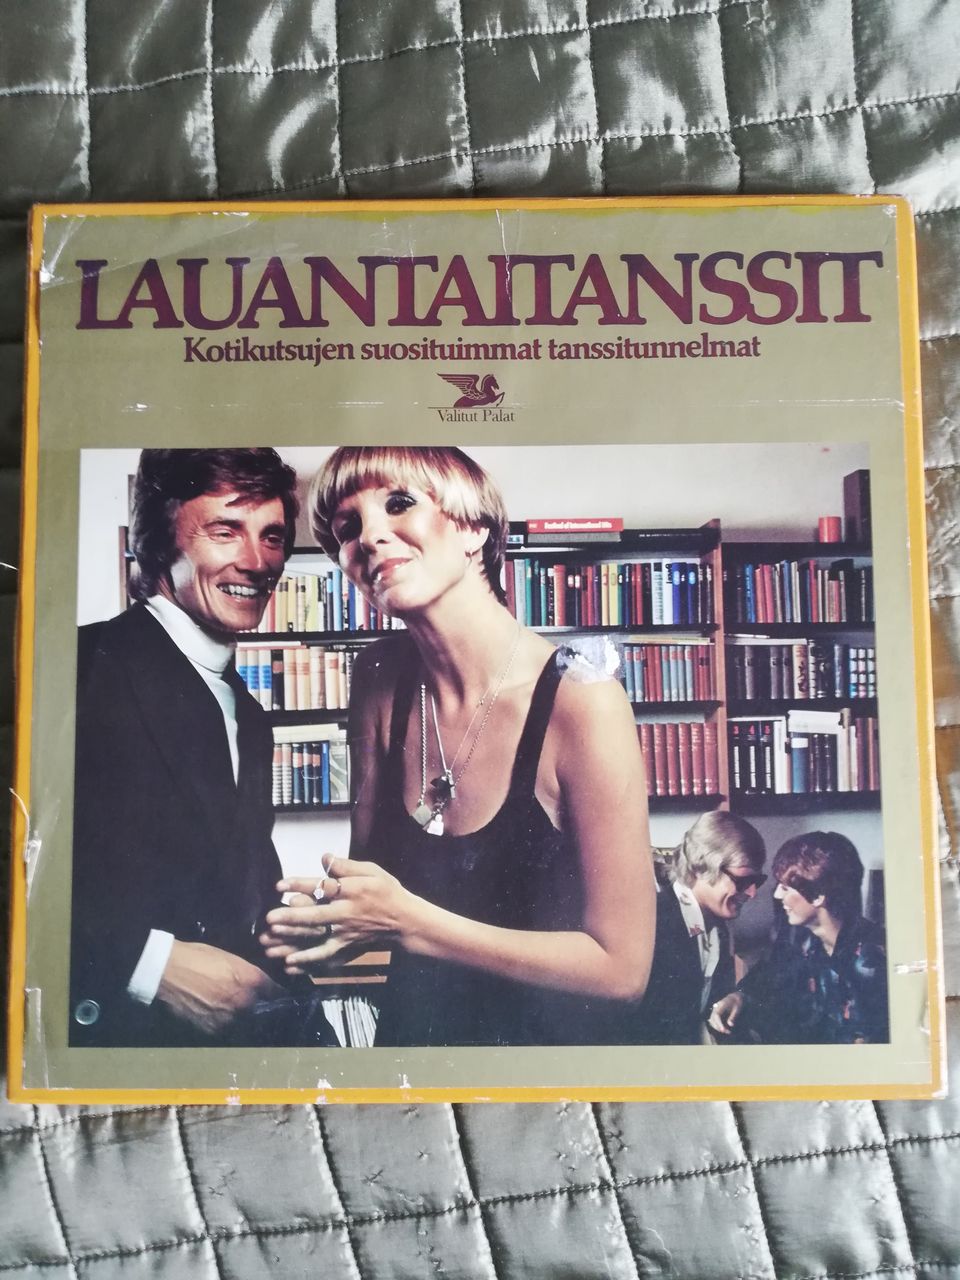 Launtaitanssit – Kotikutsujen suosituimmat tanssitunnelmat 8 LP kokoelma 1976